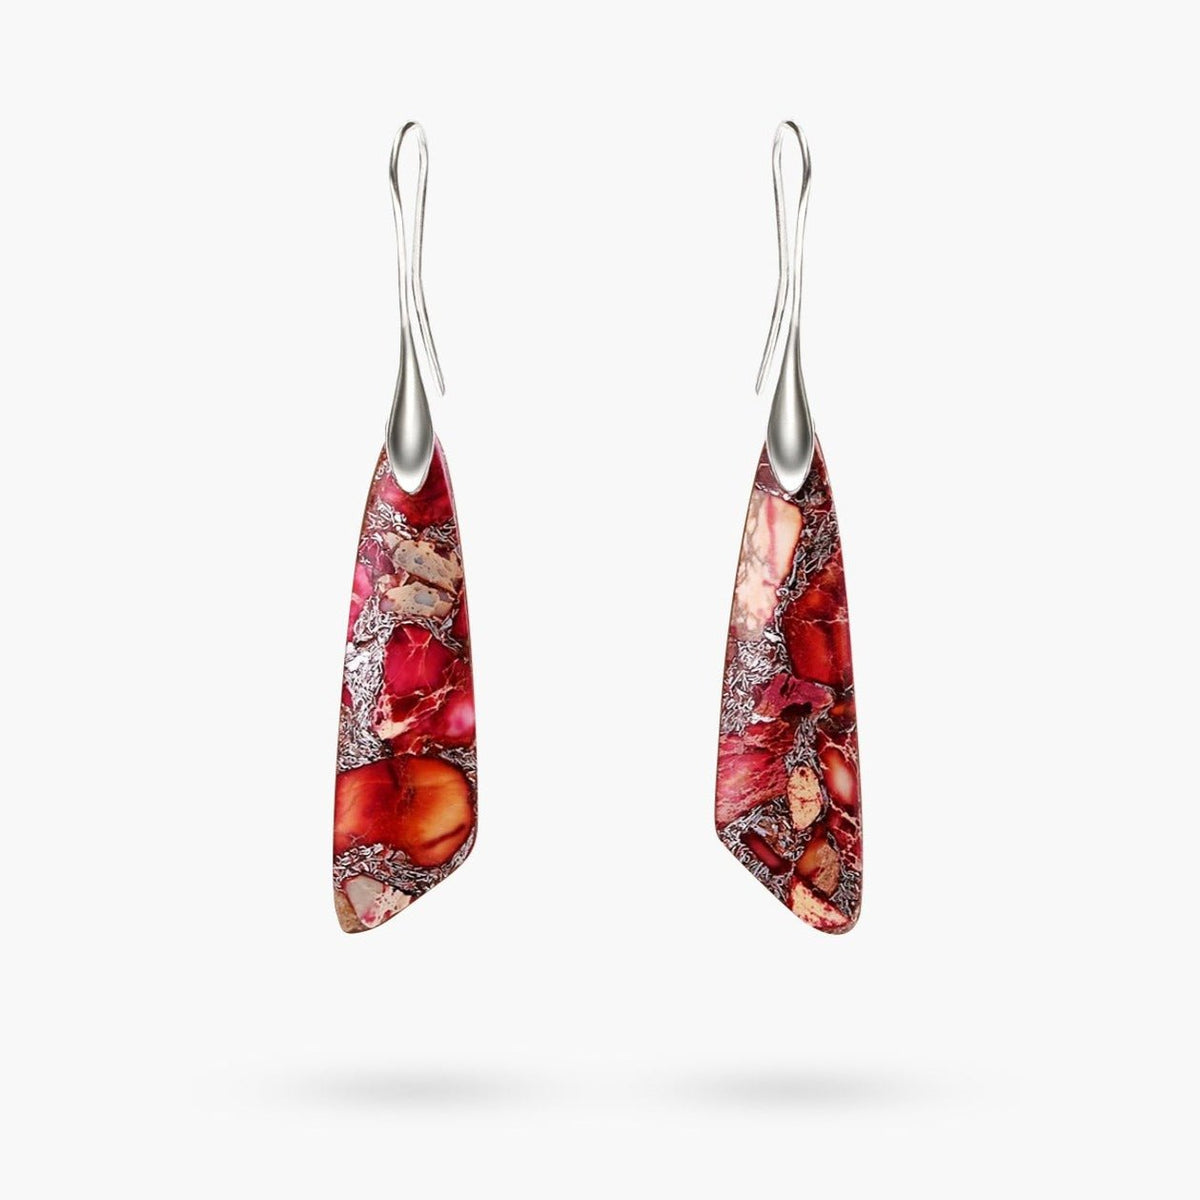 Antique Red Regalite Hook Earrings - Cape Diablo